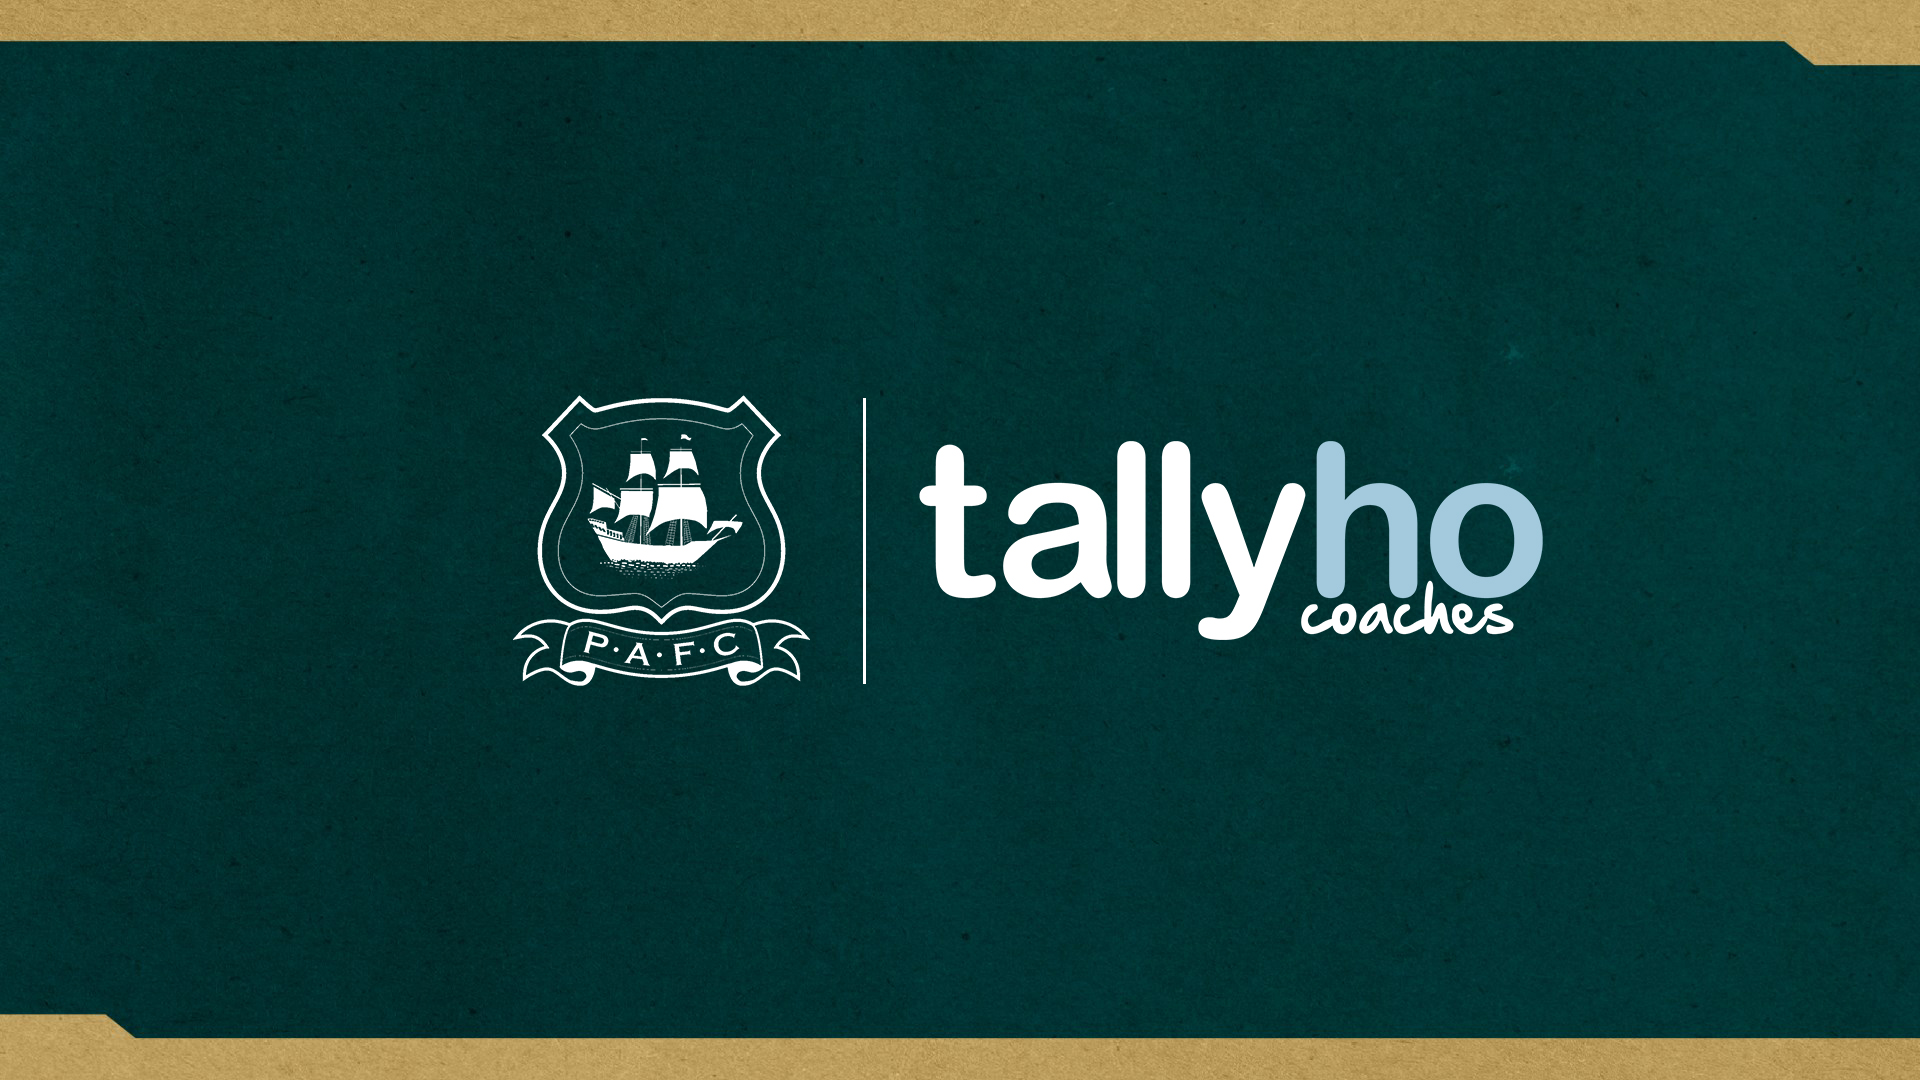 Tally ho partnership